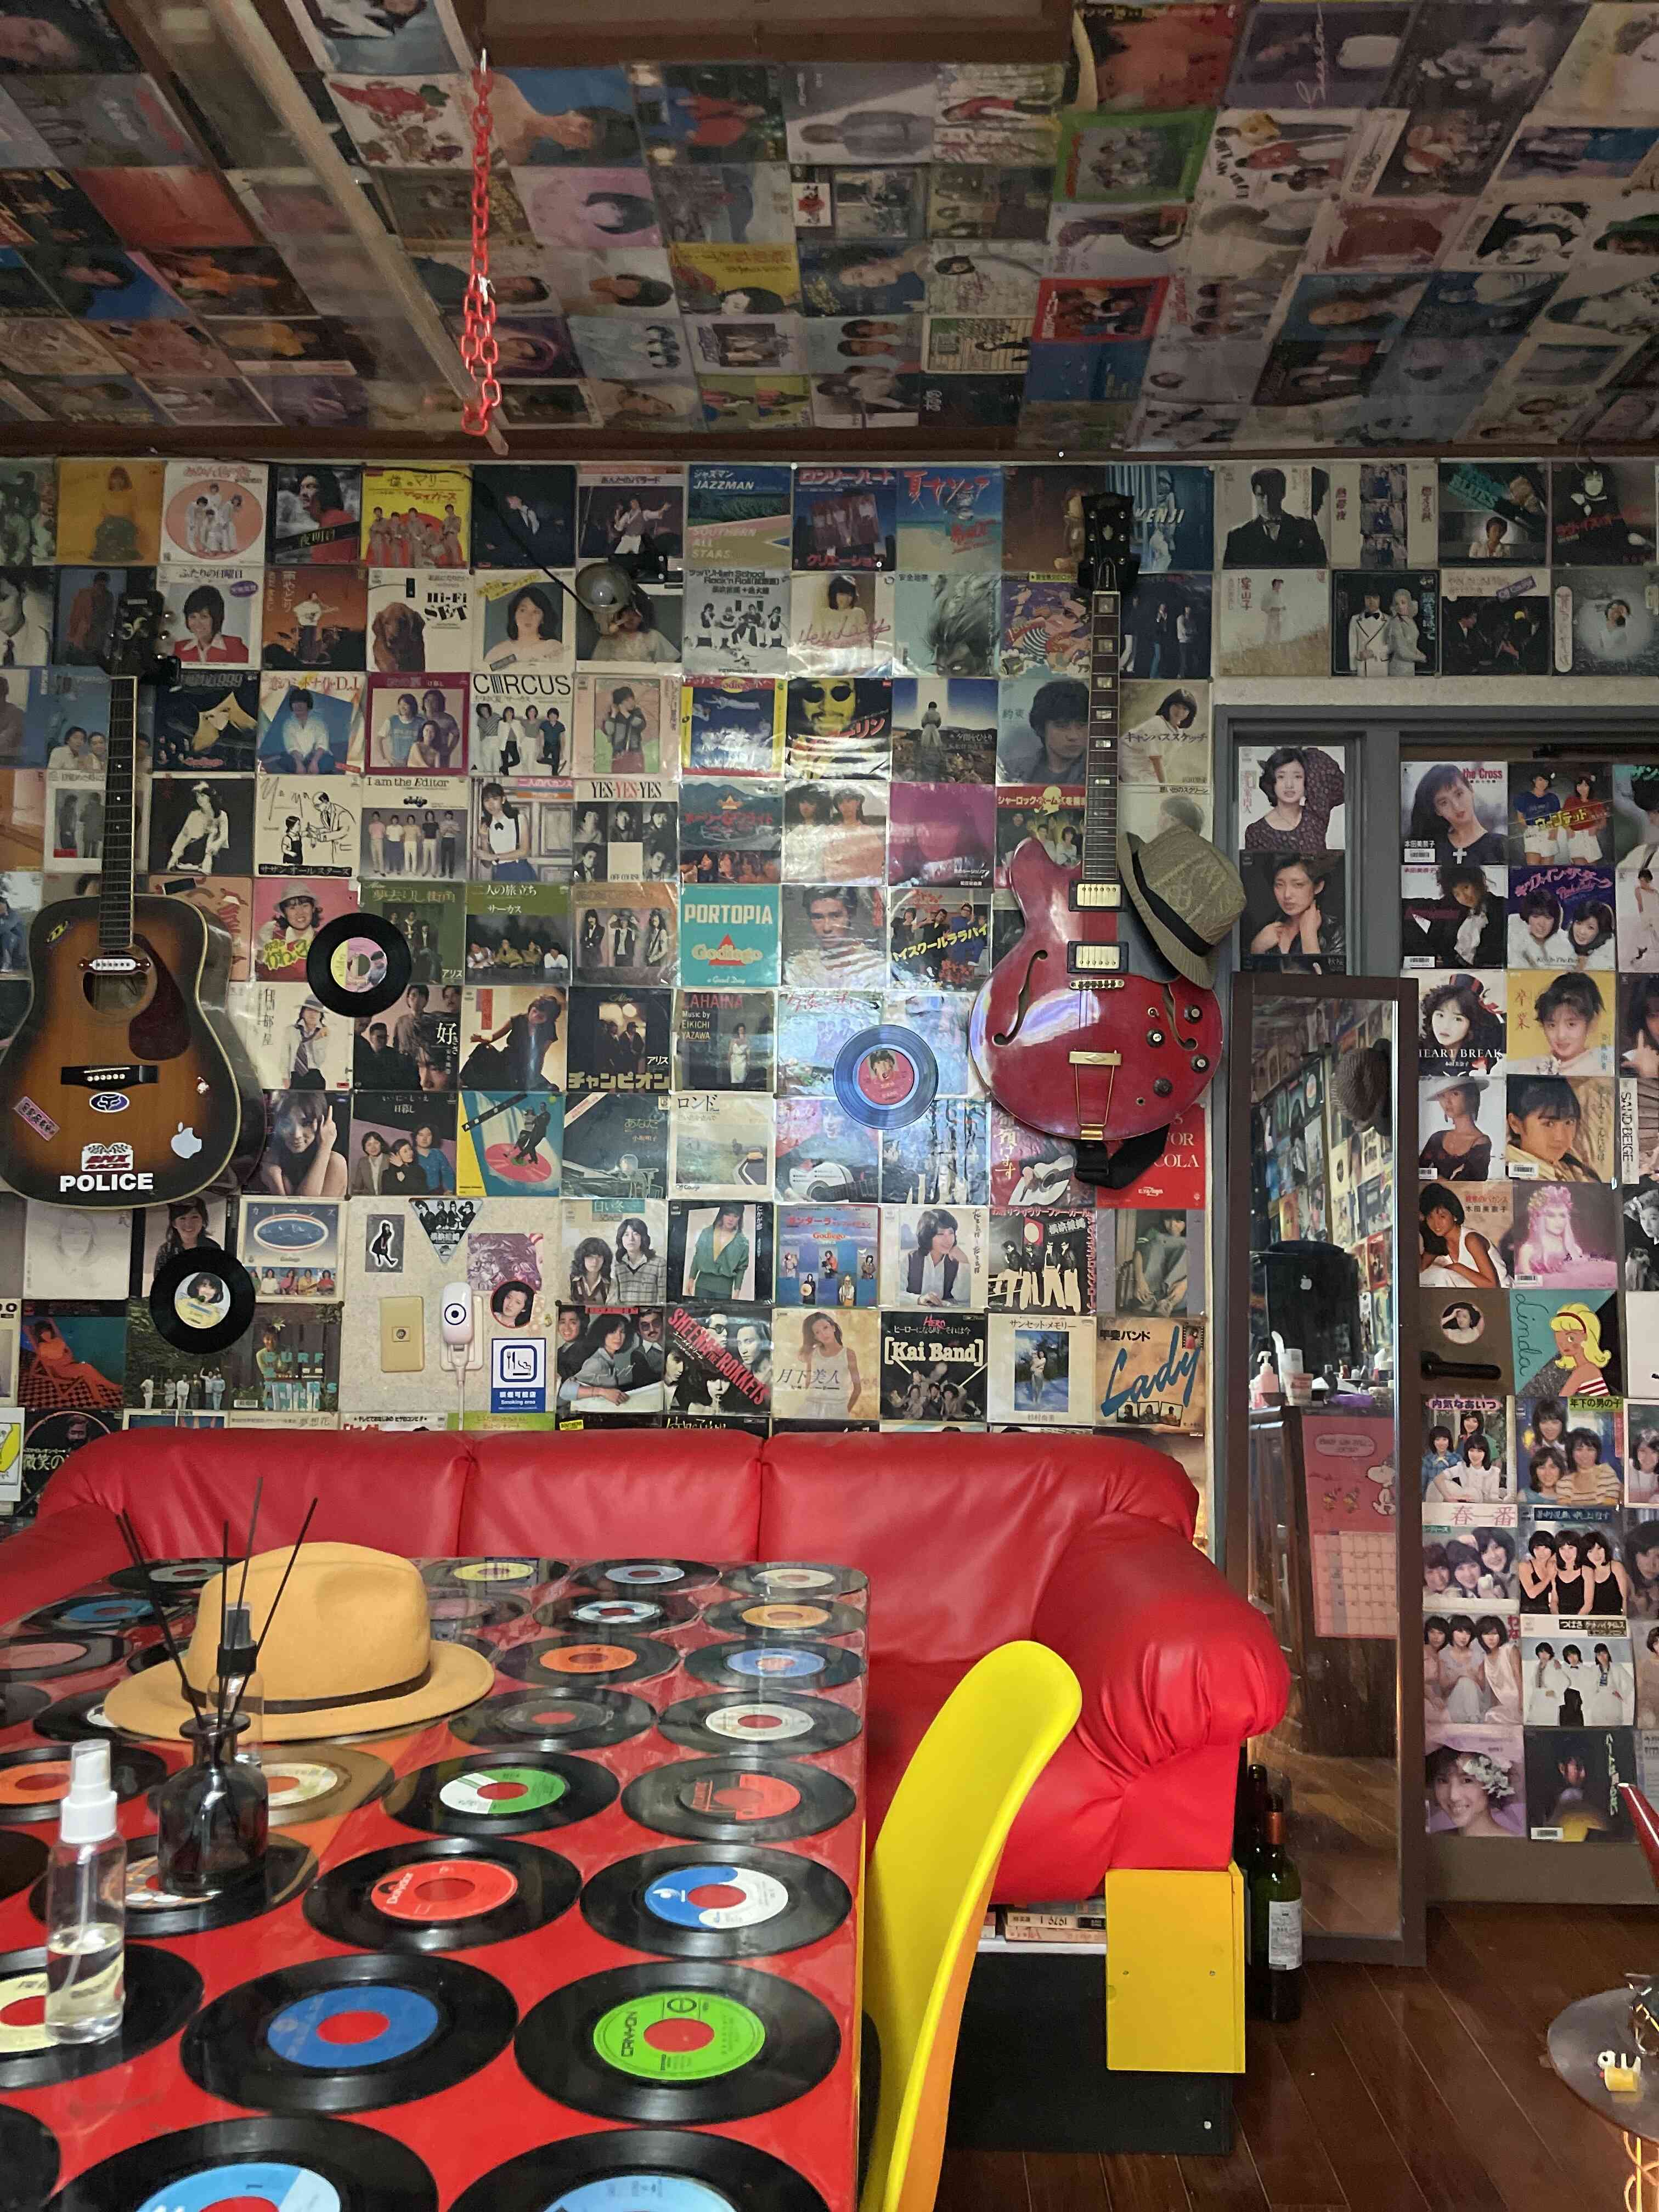 洋楽・邦楽のロック・フォーク・ポップス・歌謡曲 etc 部屋。
どの部屋も、レコードジャケットが壁・天井にびっしり。